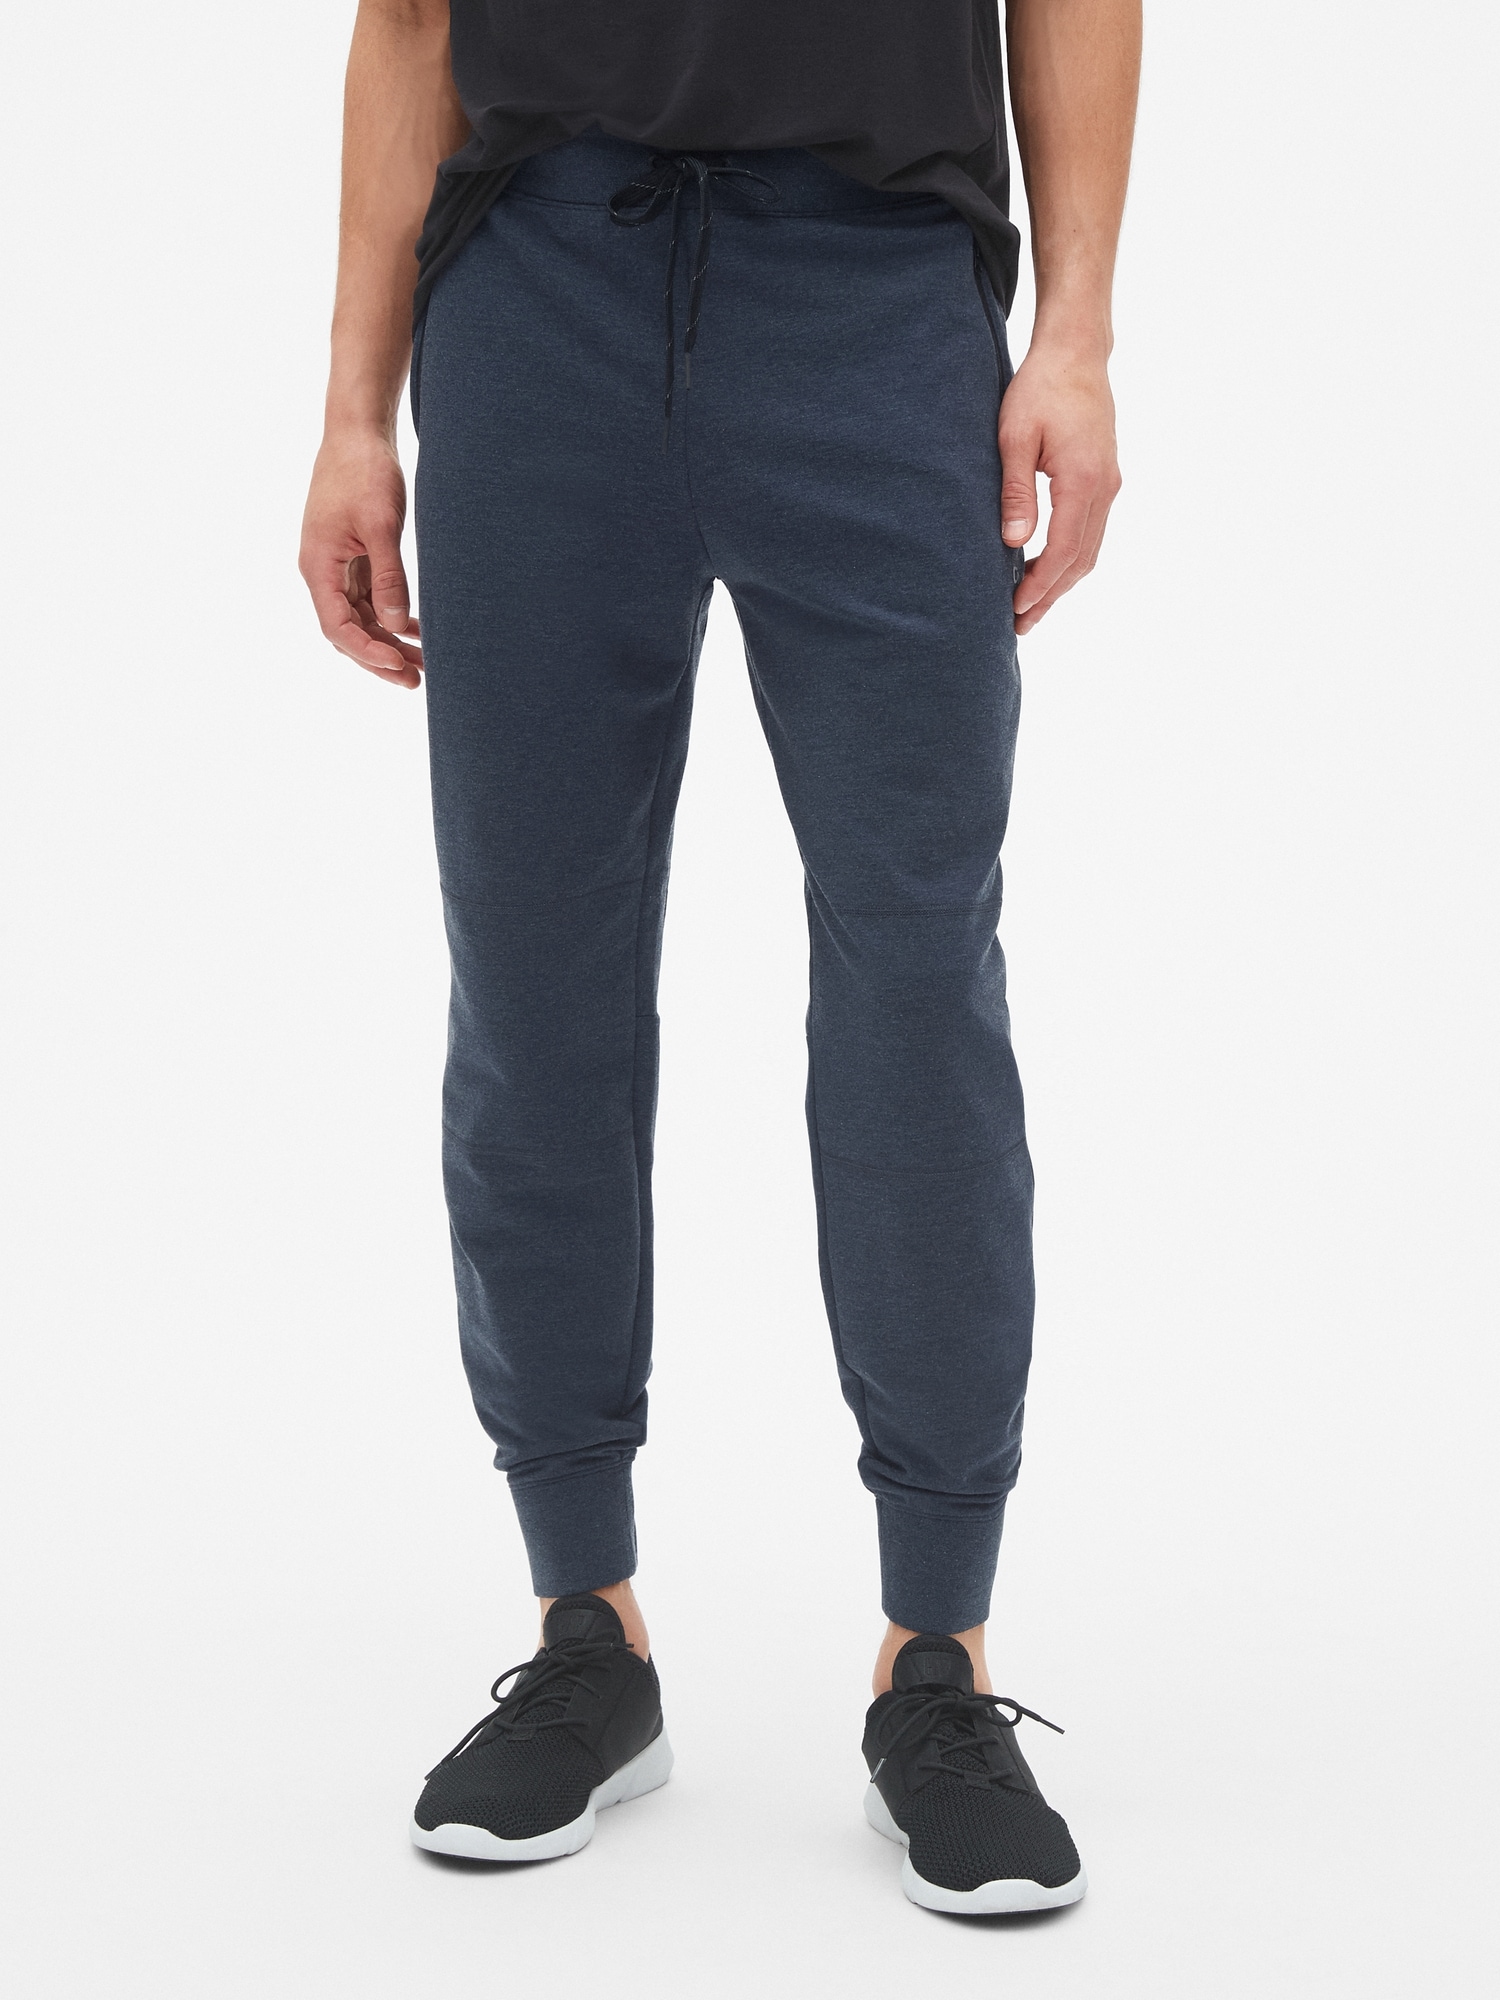 男裝|刷毛束口褲 Gap Fit運動系列-混合海軍藍